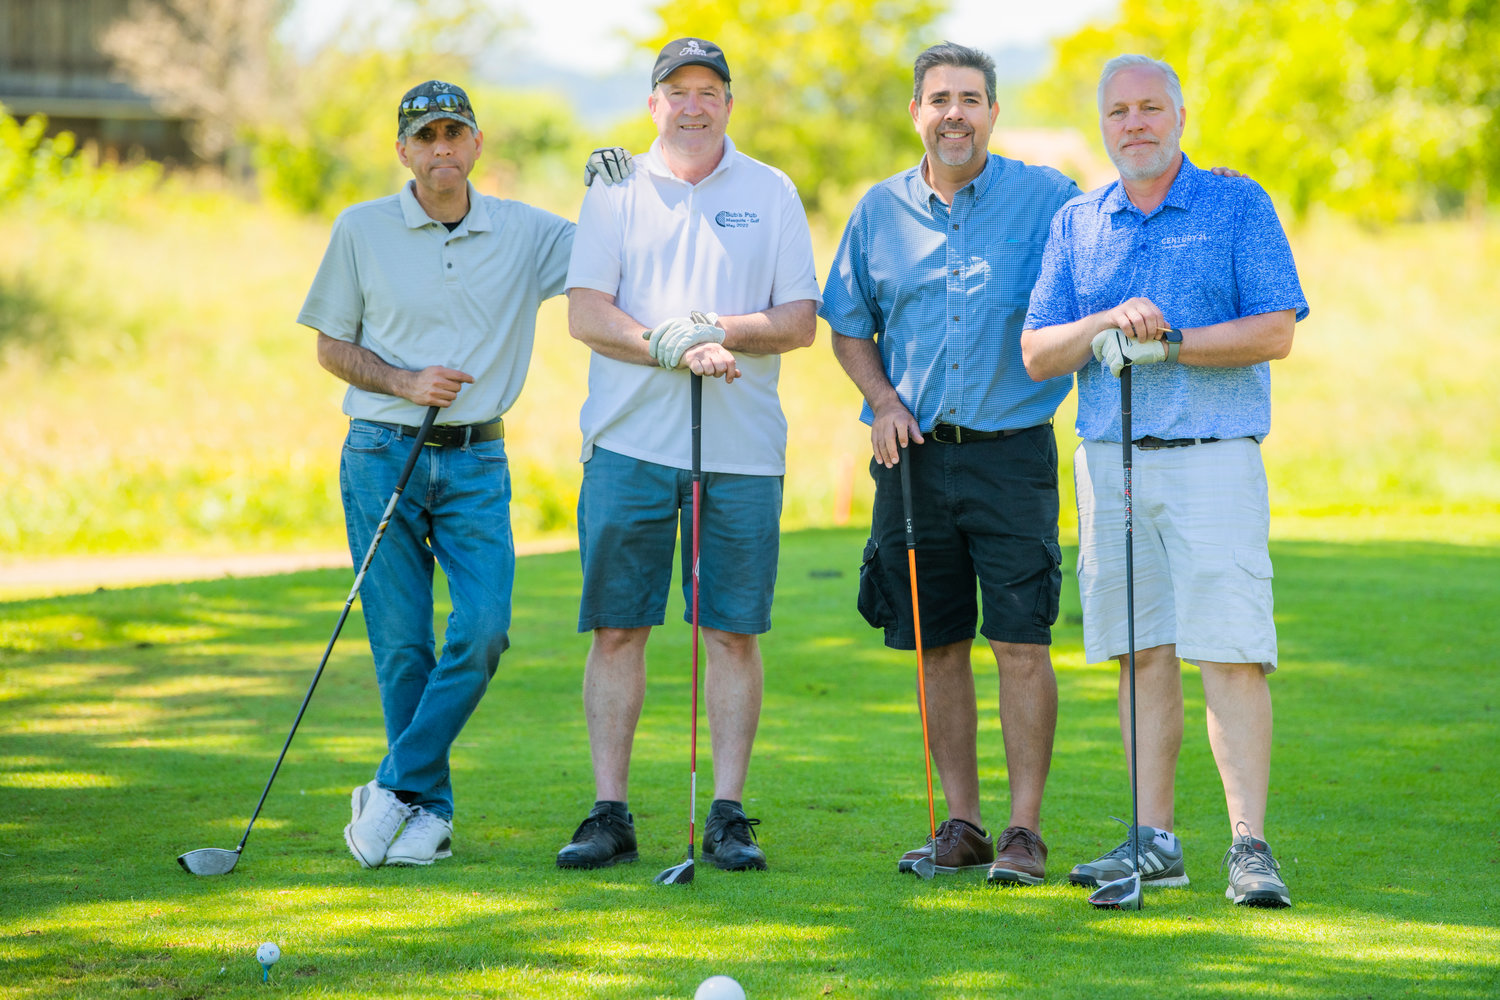 L'équipe Century 21 Lund Realtors pose pour une photo vendredi à Chehalis lors d'un tournoi de golf caritatif pour collecter des fonds pour la Hope Alliance.